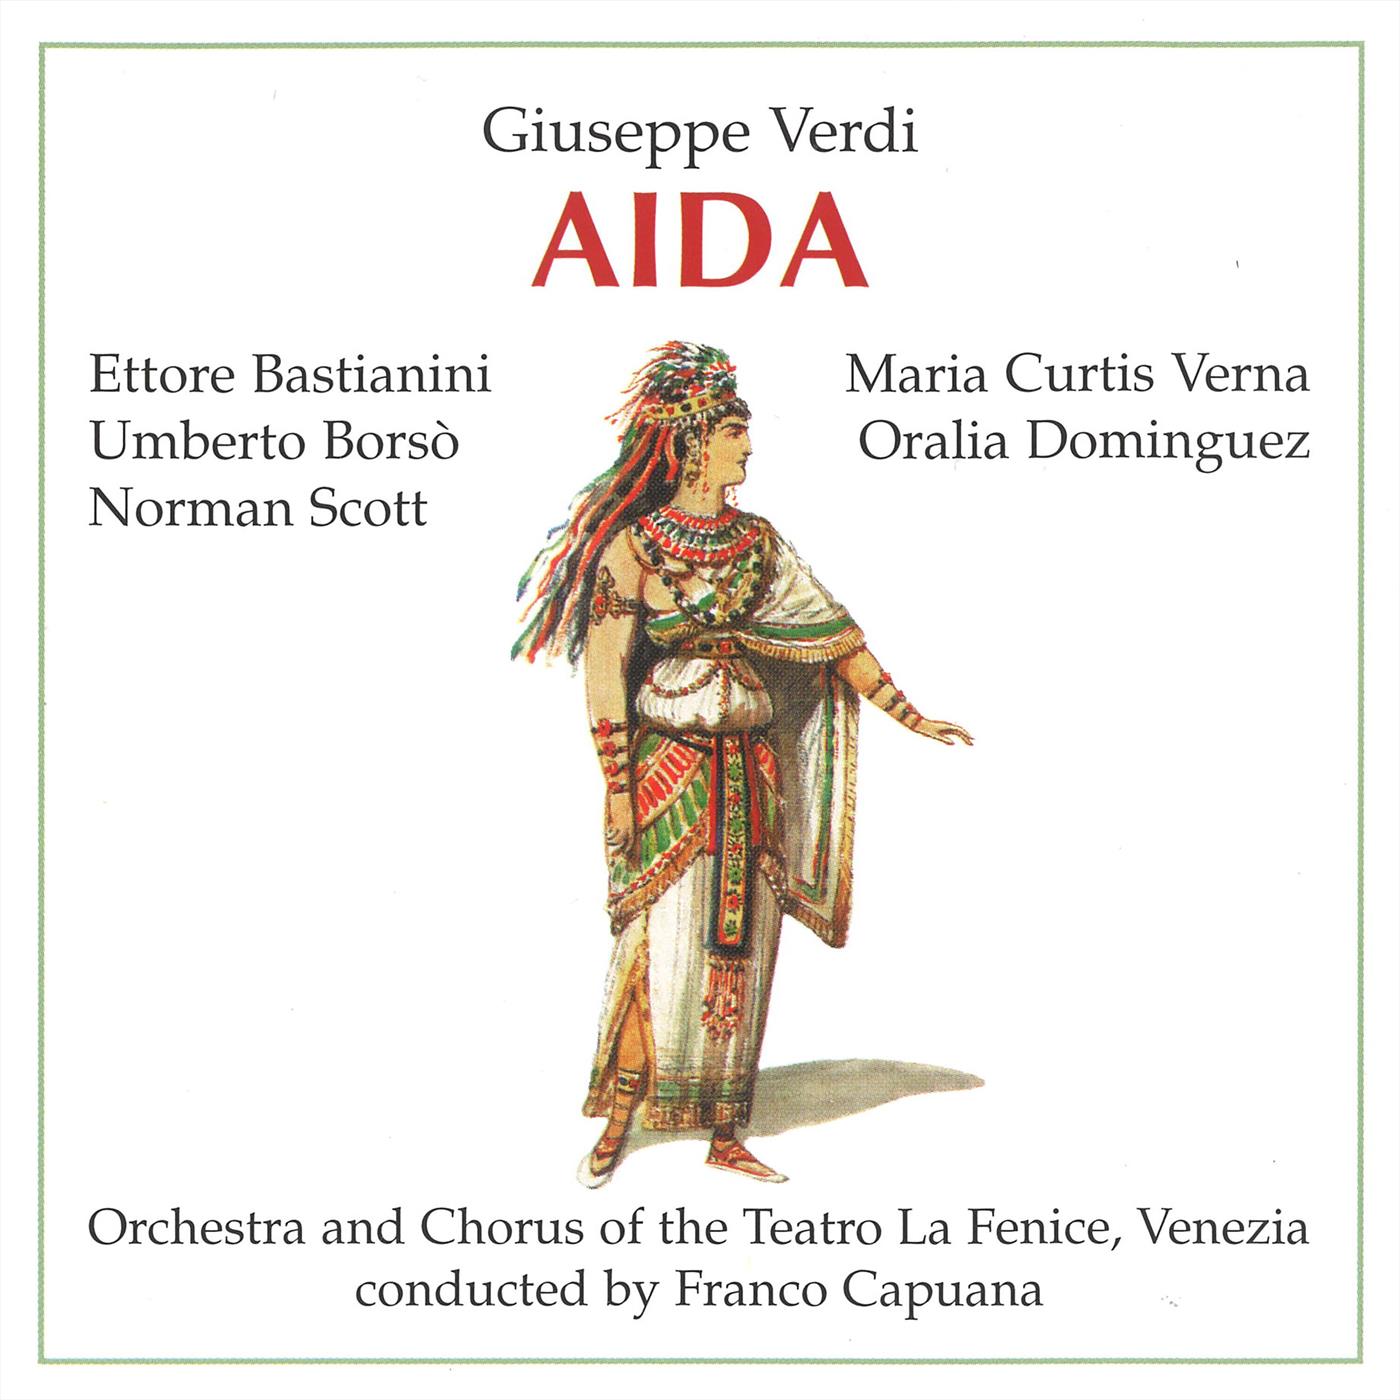 Aida: Pur ti riveggo mia dolce Aida